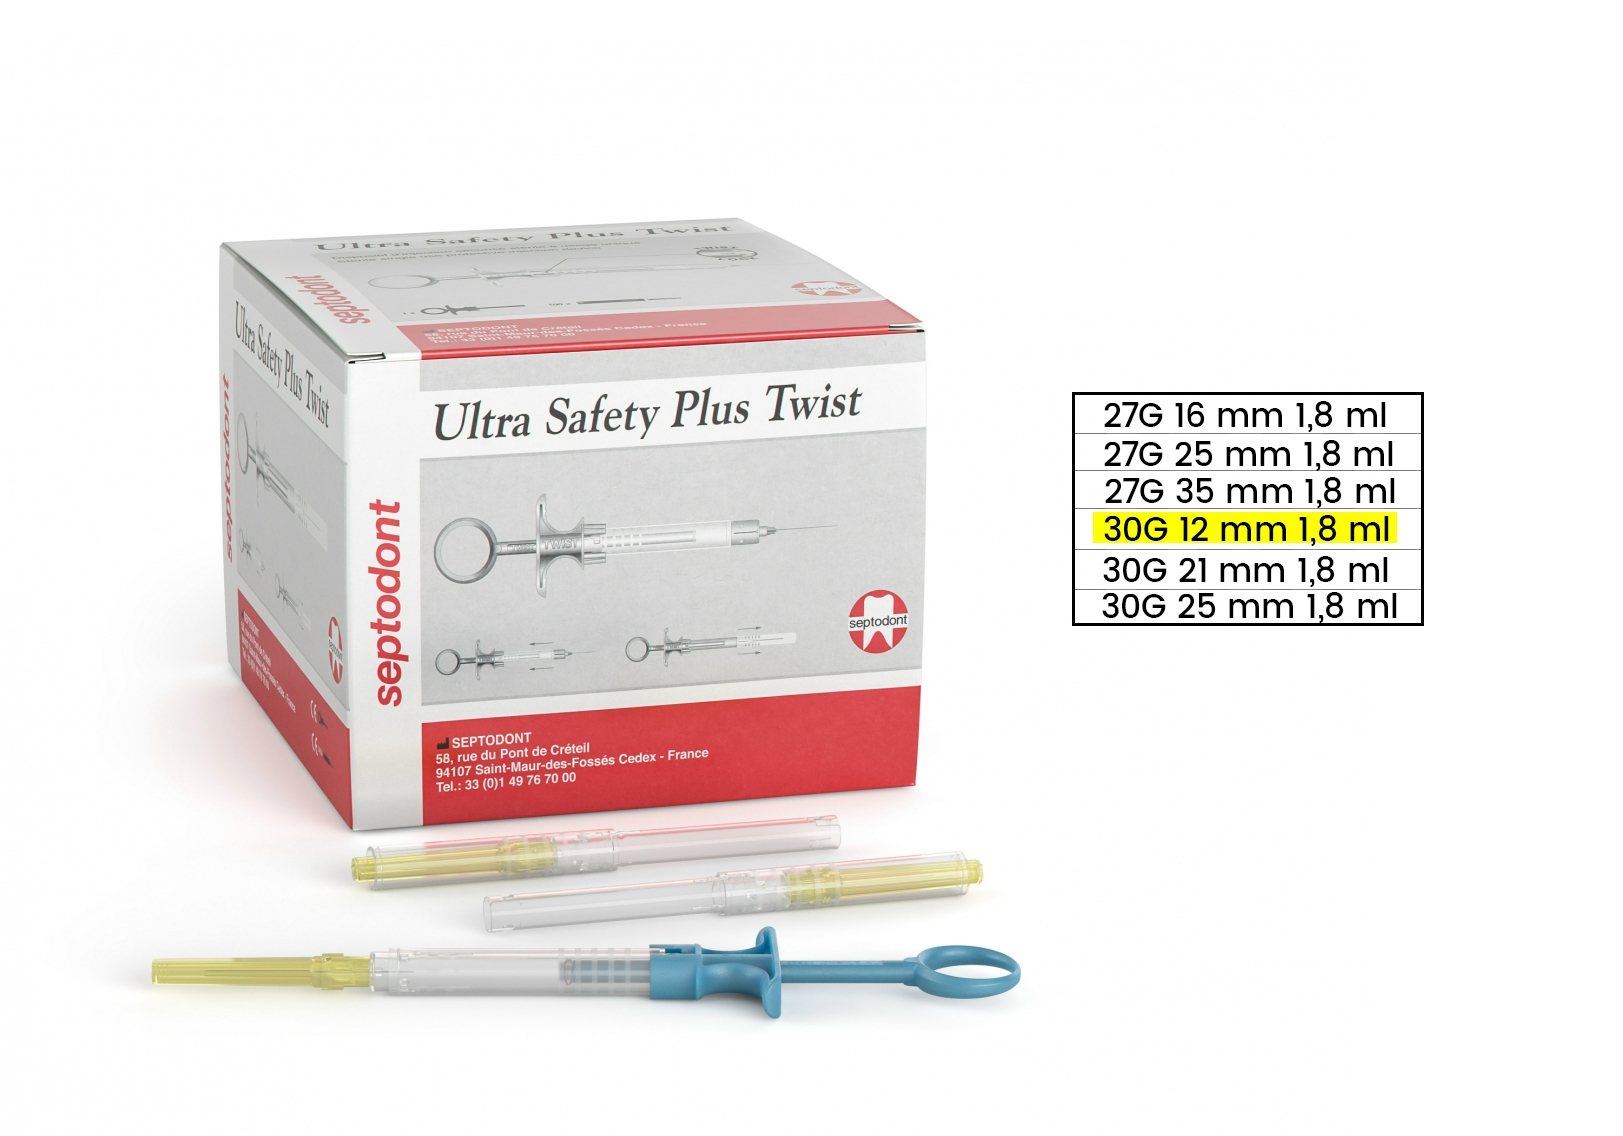 Ultra Safety Plus TWIST 30G 12 mm 1,8 ml  (100 db steril tű + 1 sterilizálható fecskendő)